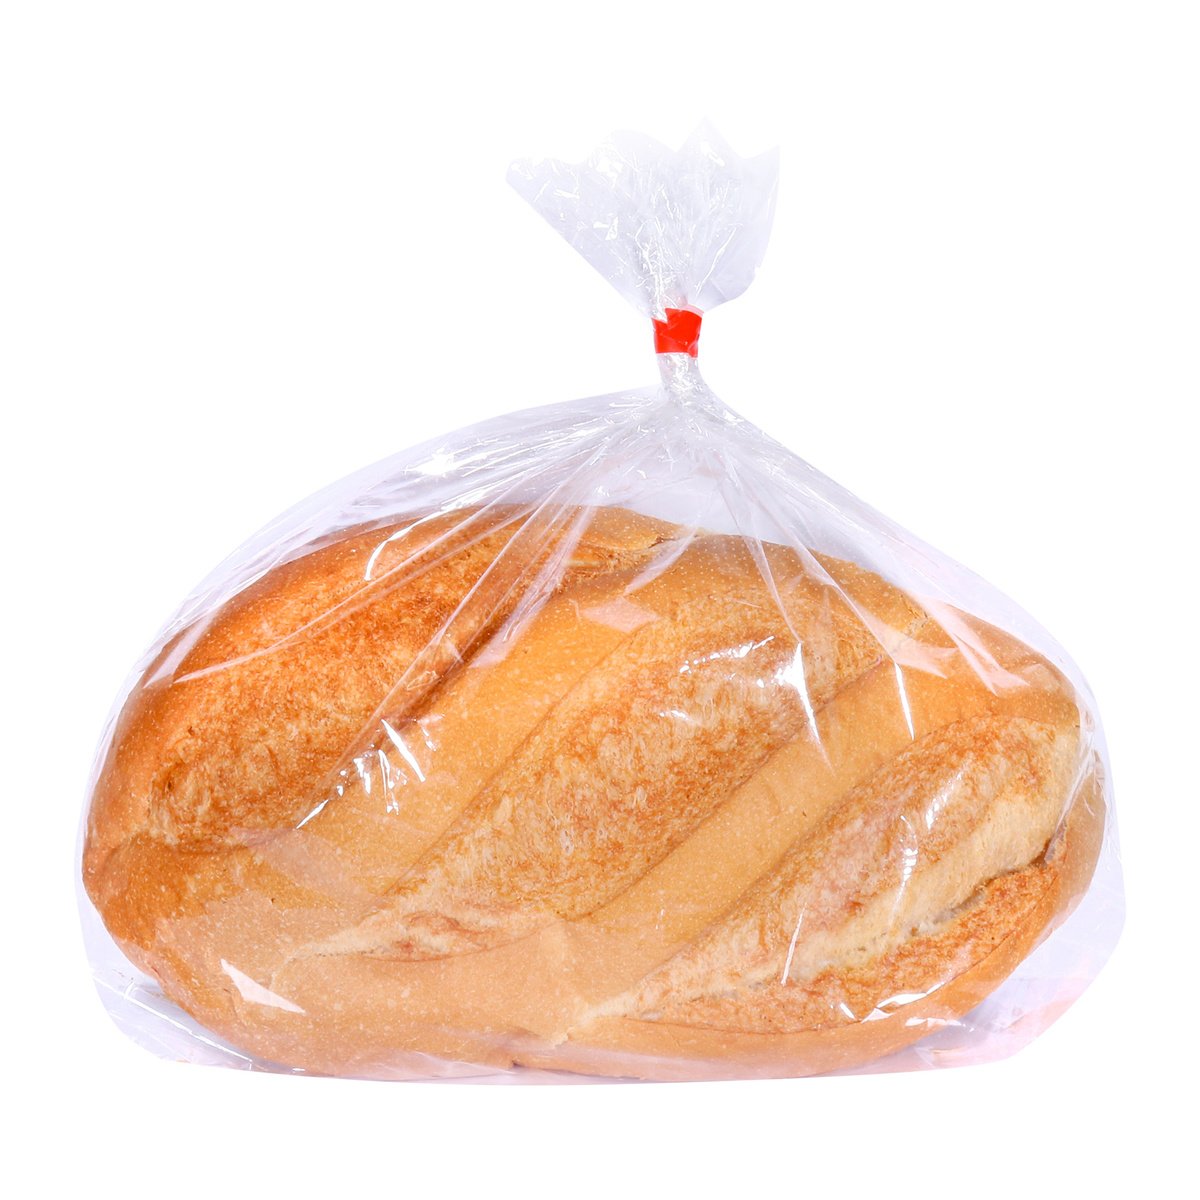 اشتري قم بشراء لولو خبز أبيض مقرمش قطعة واحدة Online at Best Price من الموقع - من لولو هايبر ماركت Speciality Breads في الكويت